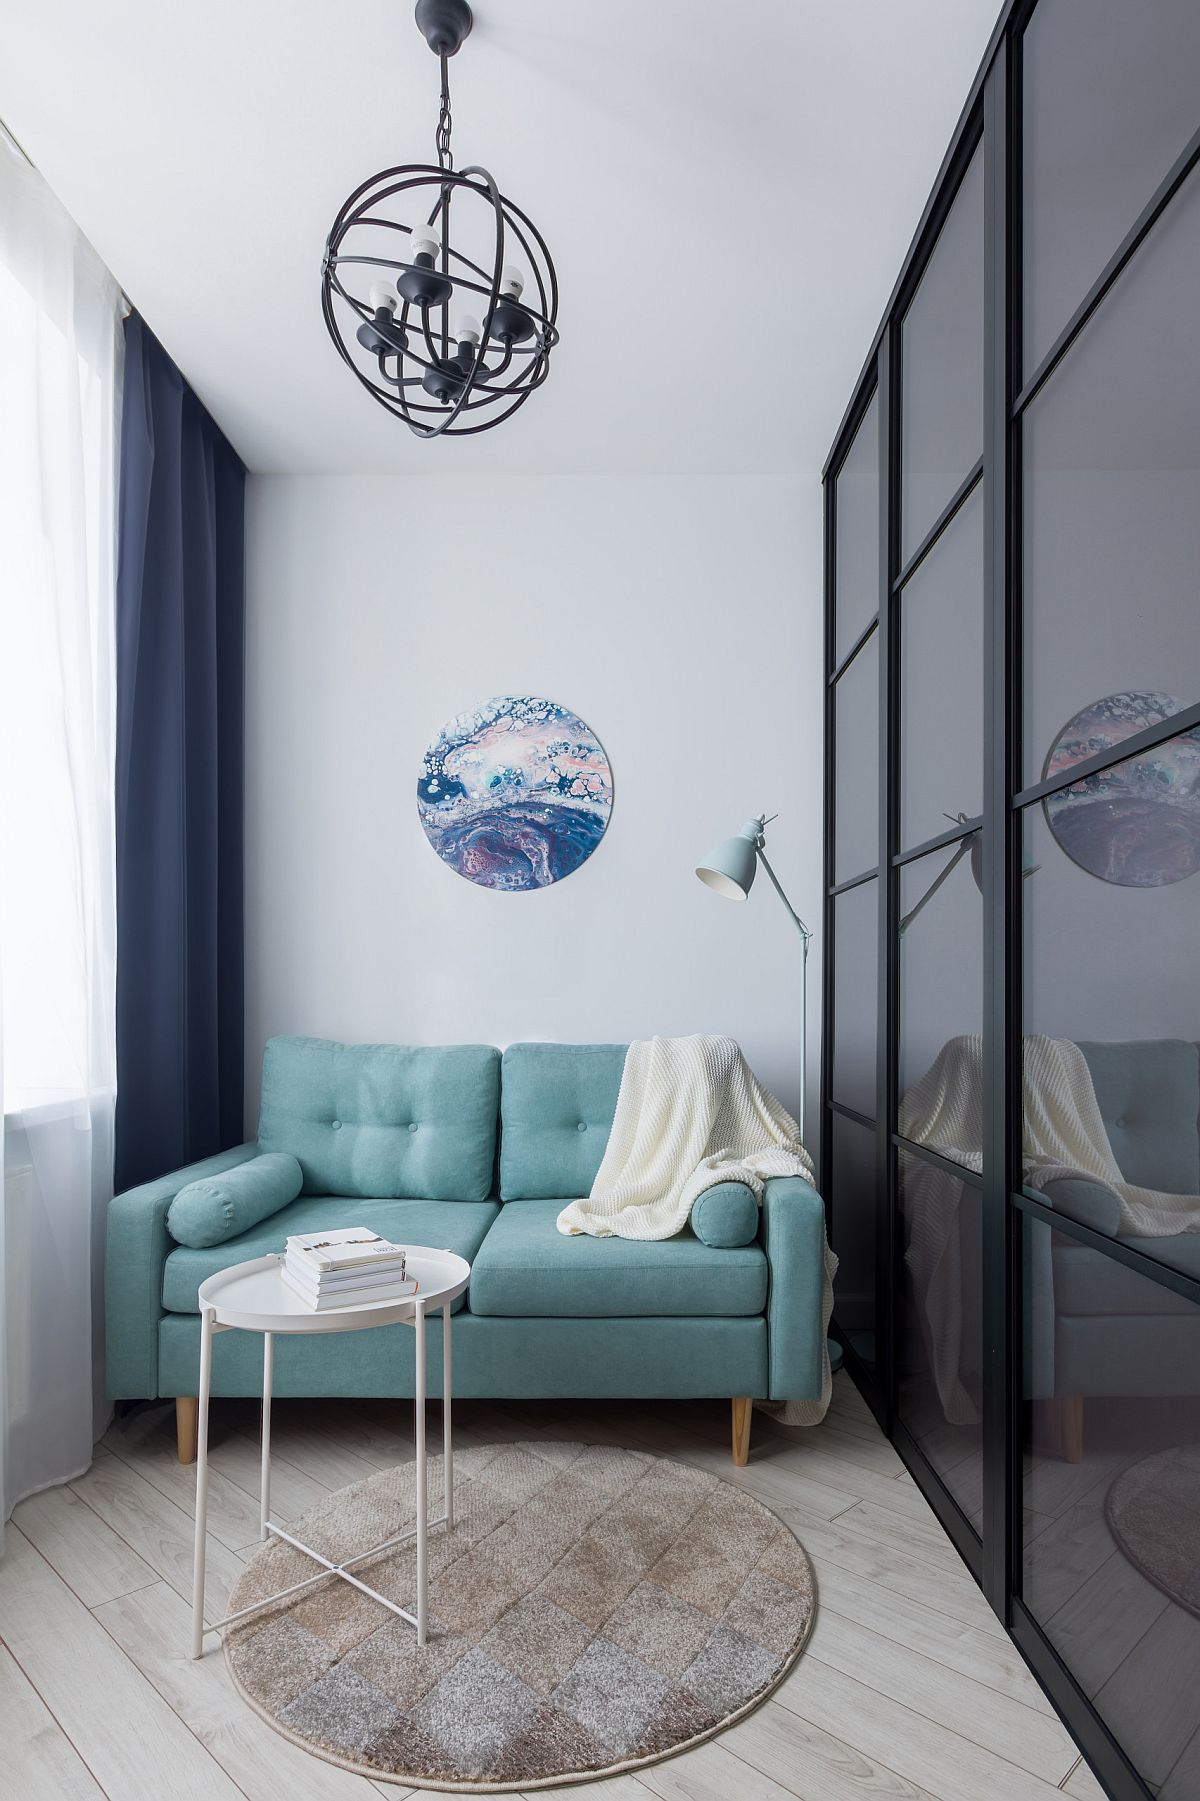  Phòng khách nhỏ với diện tích khá khiêm tốn nhưng vẫn vô cùng xinh xắn và đủ đầy khi được đặt sofa nhỏ gọn với màu xanh ngọc lam trẻ trung, bắt mắt.